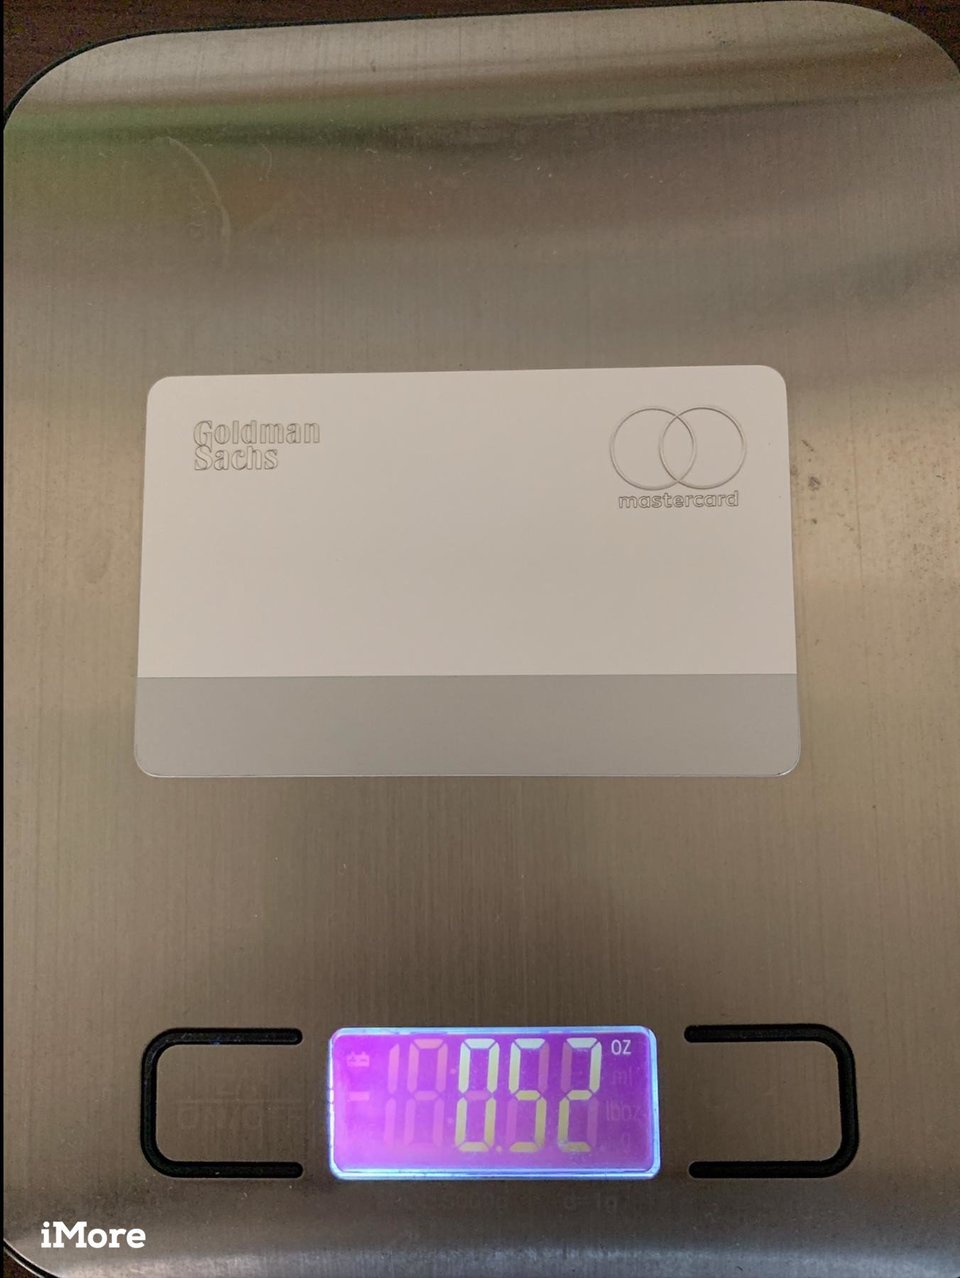 Apple Card 新照片欣赏 重量约为14.75克